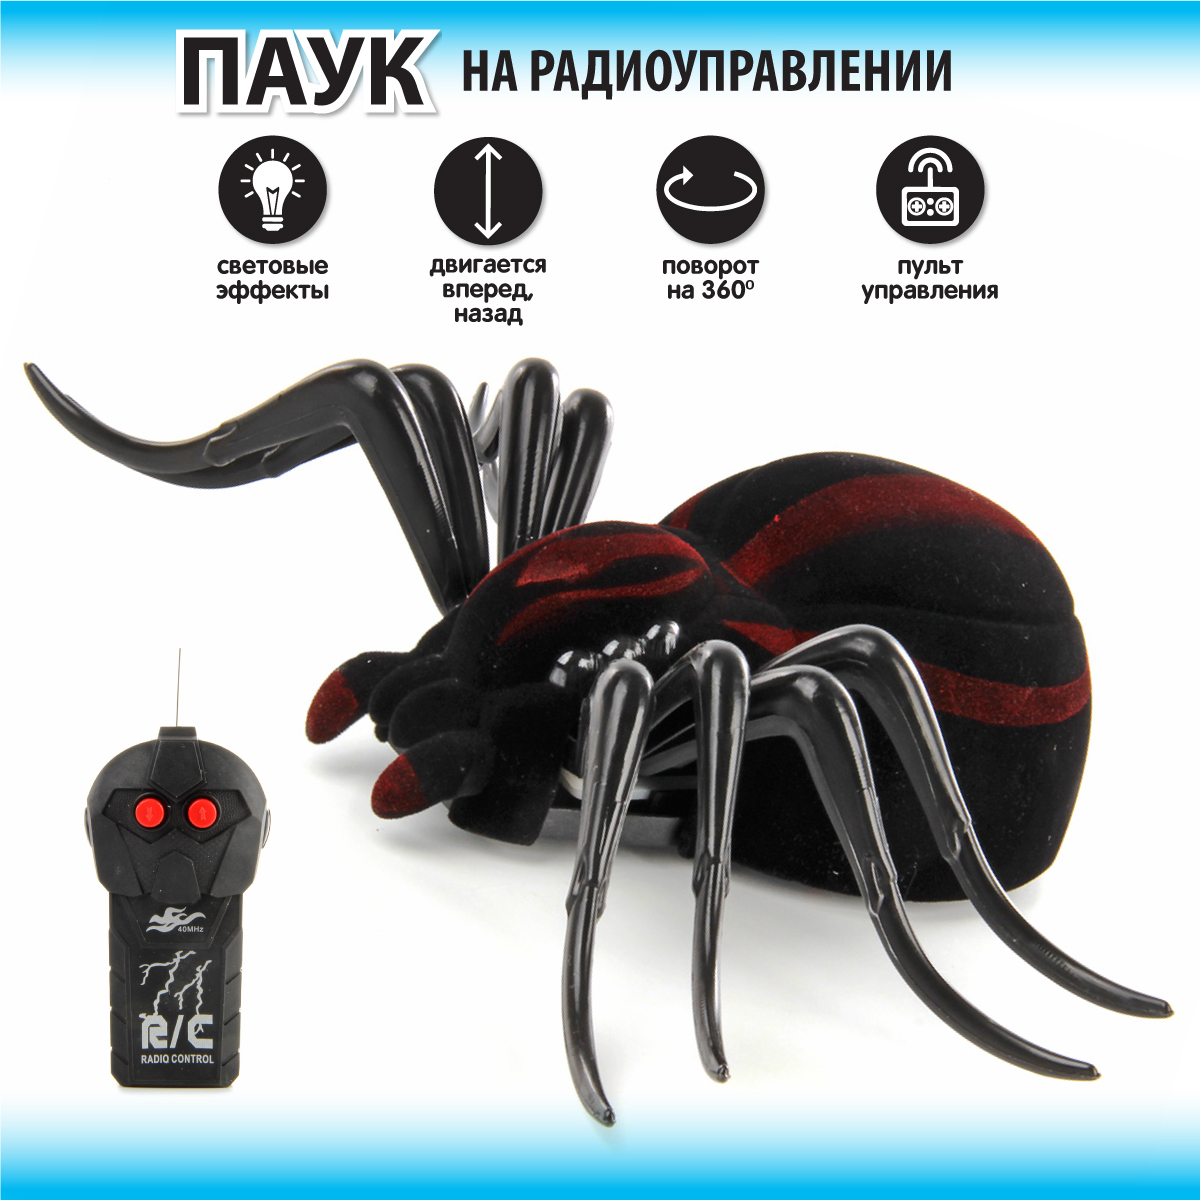 Игрушка робот Veld Co паук на радиоуправлении со светом 103900 игрушка на радиоуправлении компания друзей паук тарантул